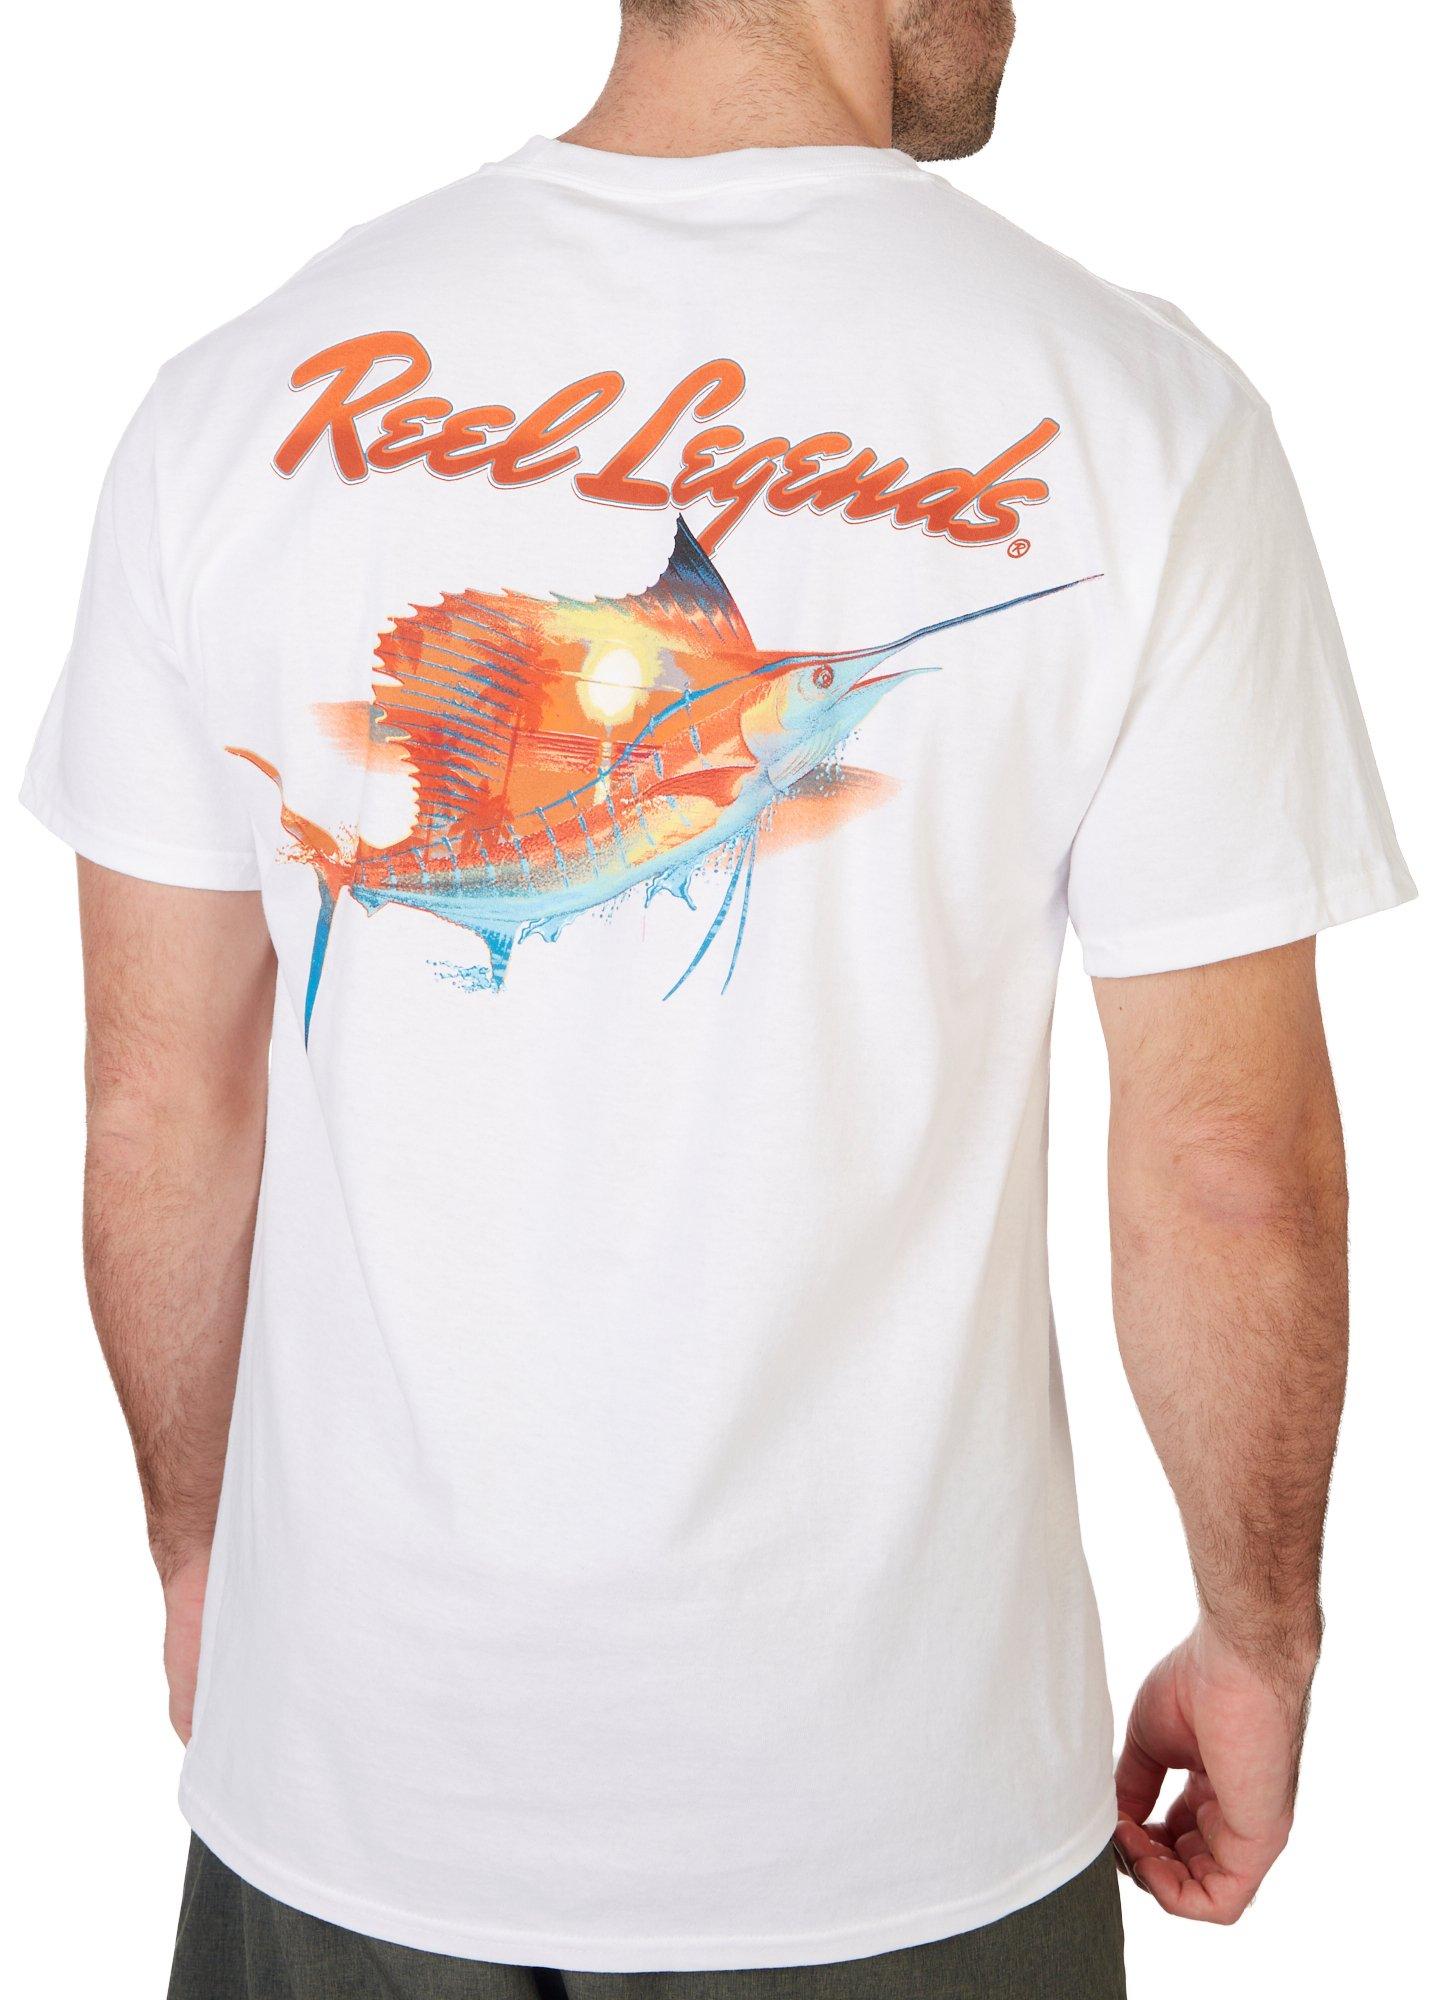 Reel Legends Mens Sailfish Suns T-Shirt - White - Medium